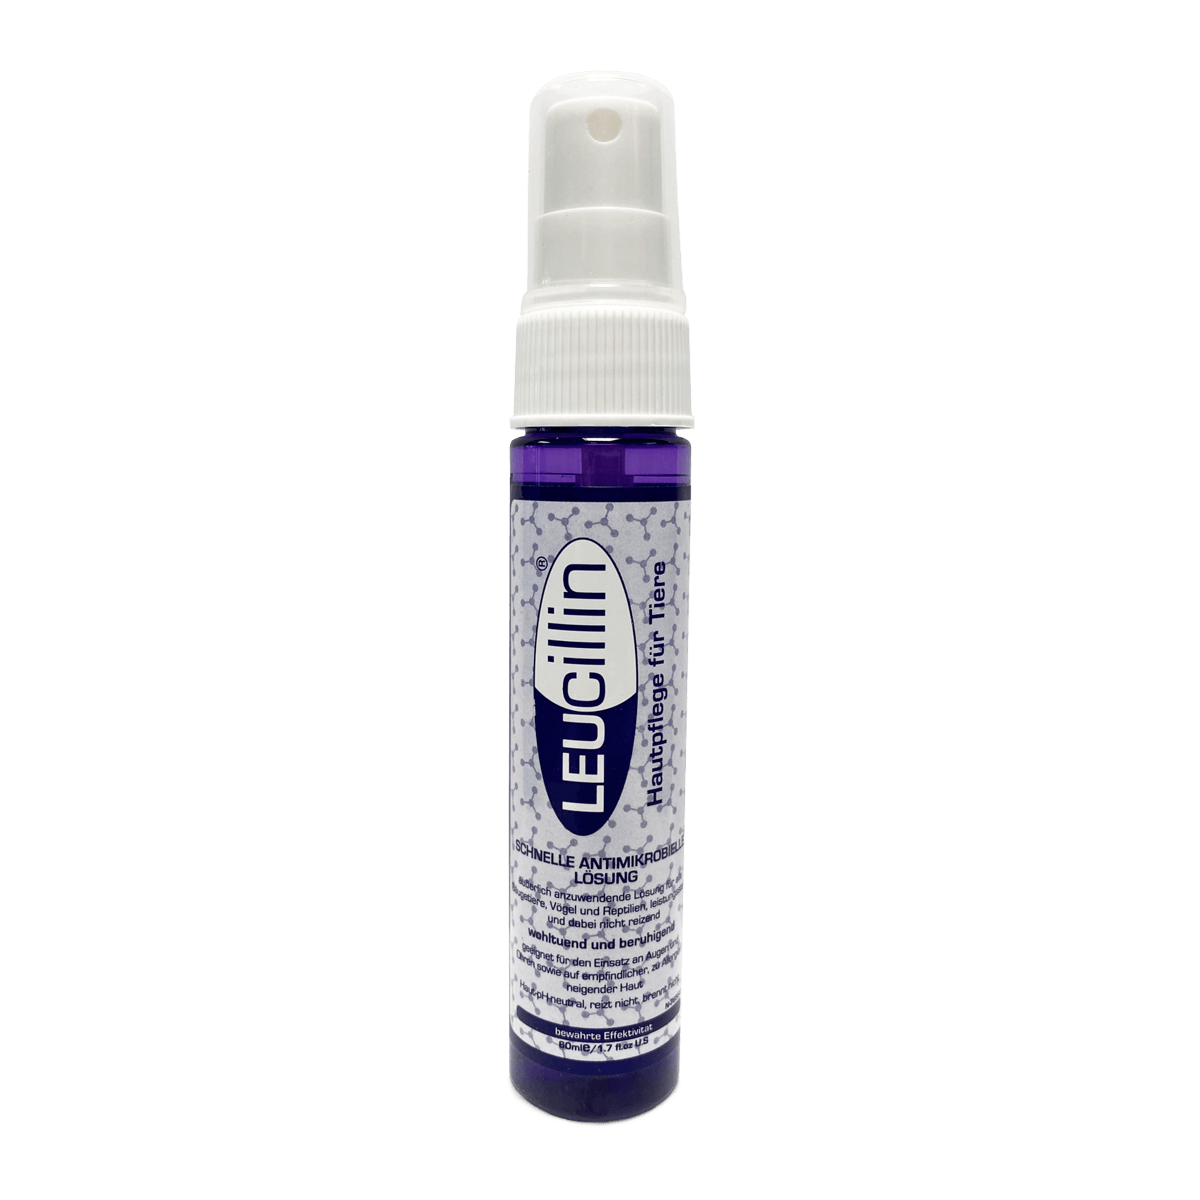 Leucillin ist ein antiseptisches Spray, es enthält hypochlorige Säure, die natürlicherweise ein wichtiger Bestandteil des Immunsystems ist und als Schutz vor verschiedenen Keimen dient.